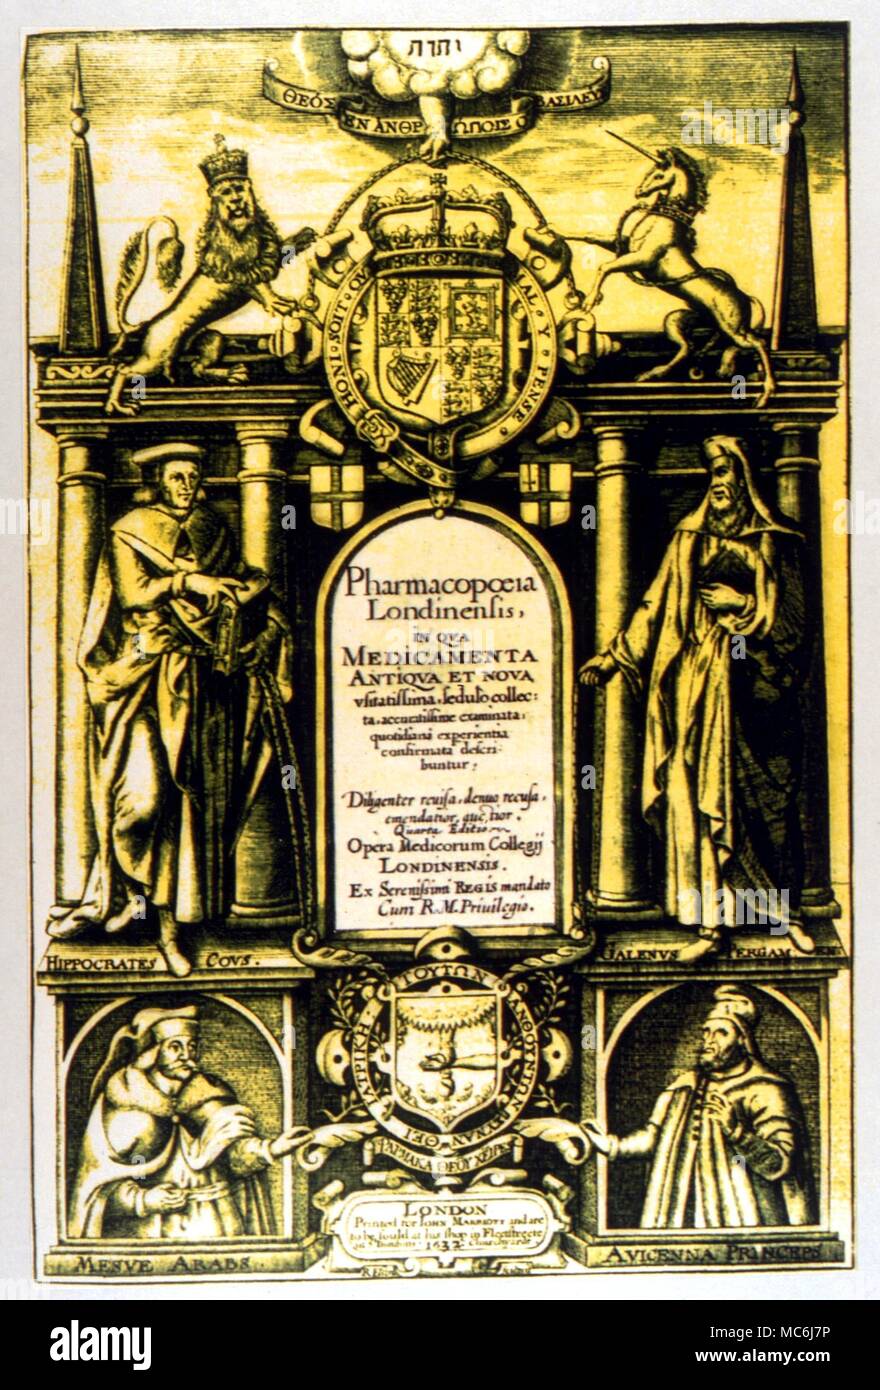 Gli occultisti - Ippocrate e Galeno ritratti dei più importanti medici, uomini di antichità, dalla titlepage del famoso 'Pharmacopoeia Londinensis' del 1632 Foto Stock